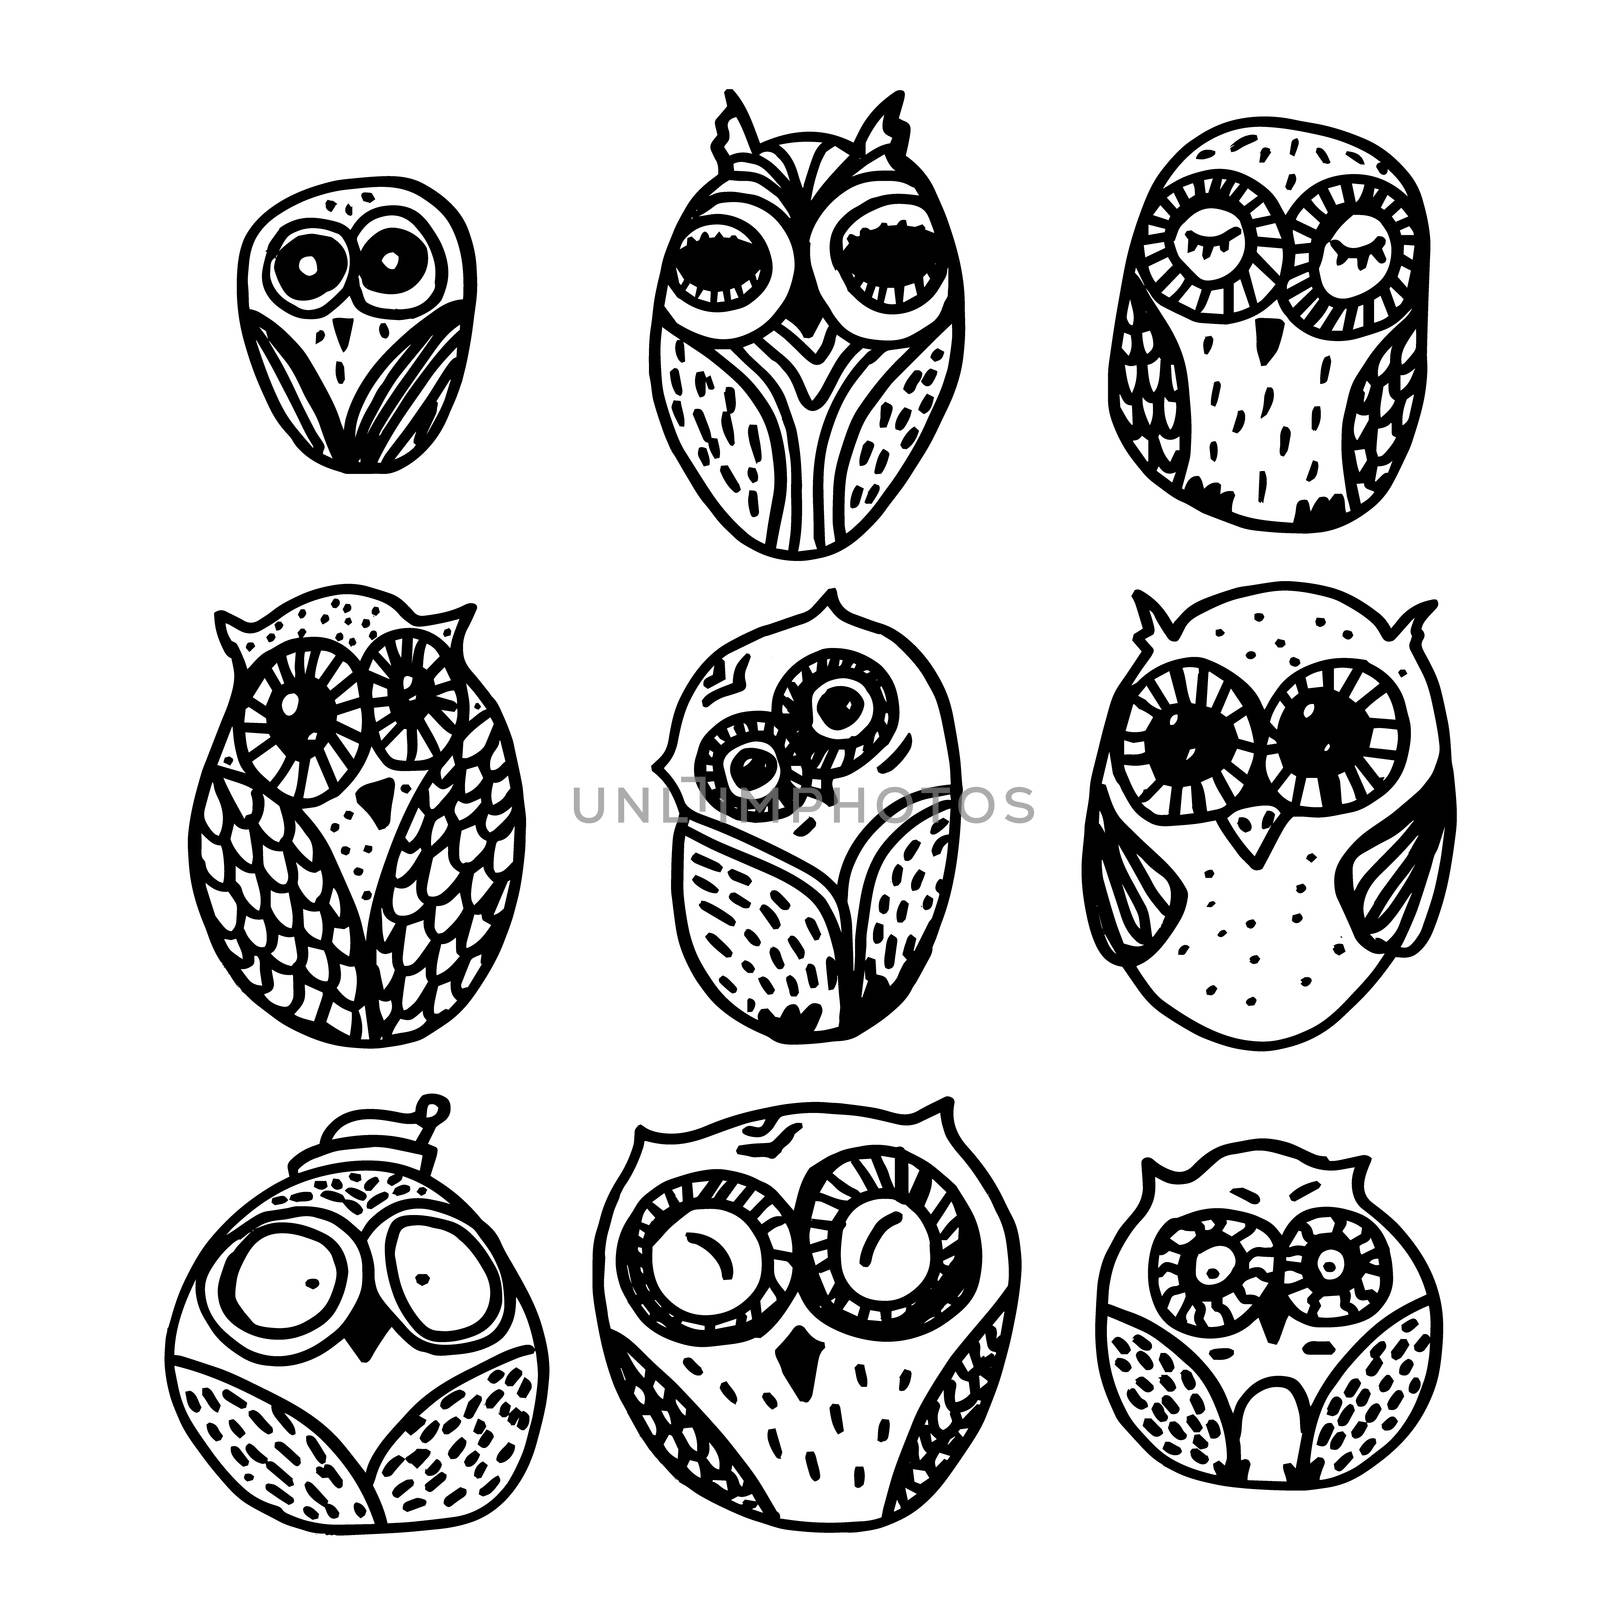 Owls hand drawn set by barsrsind